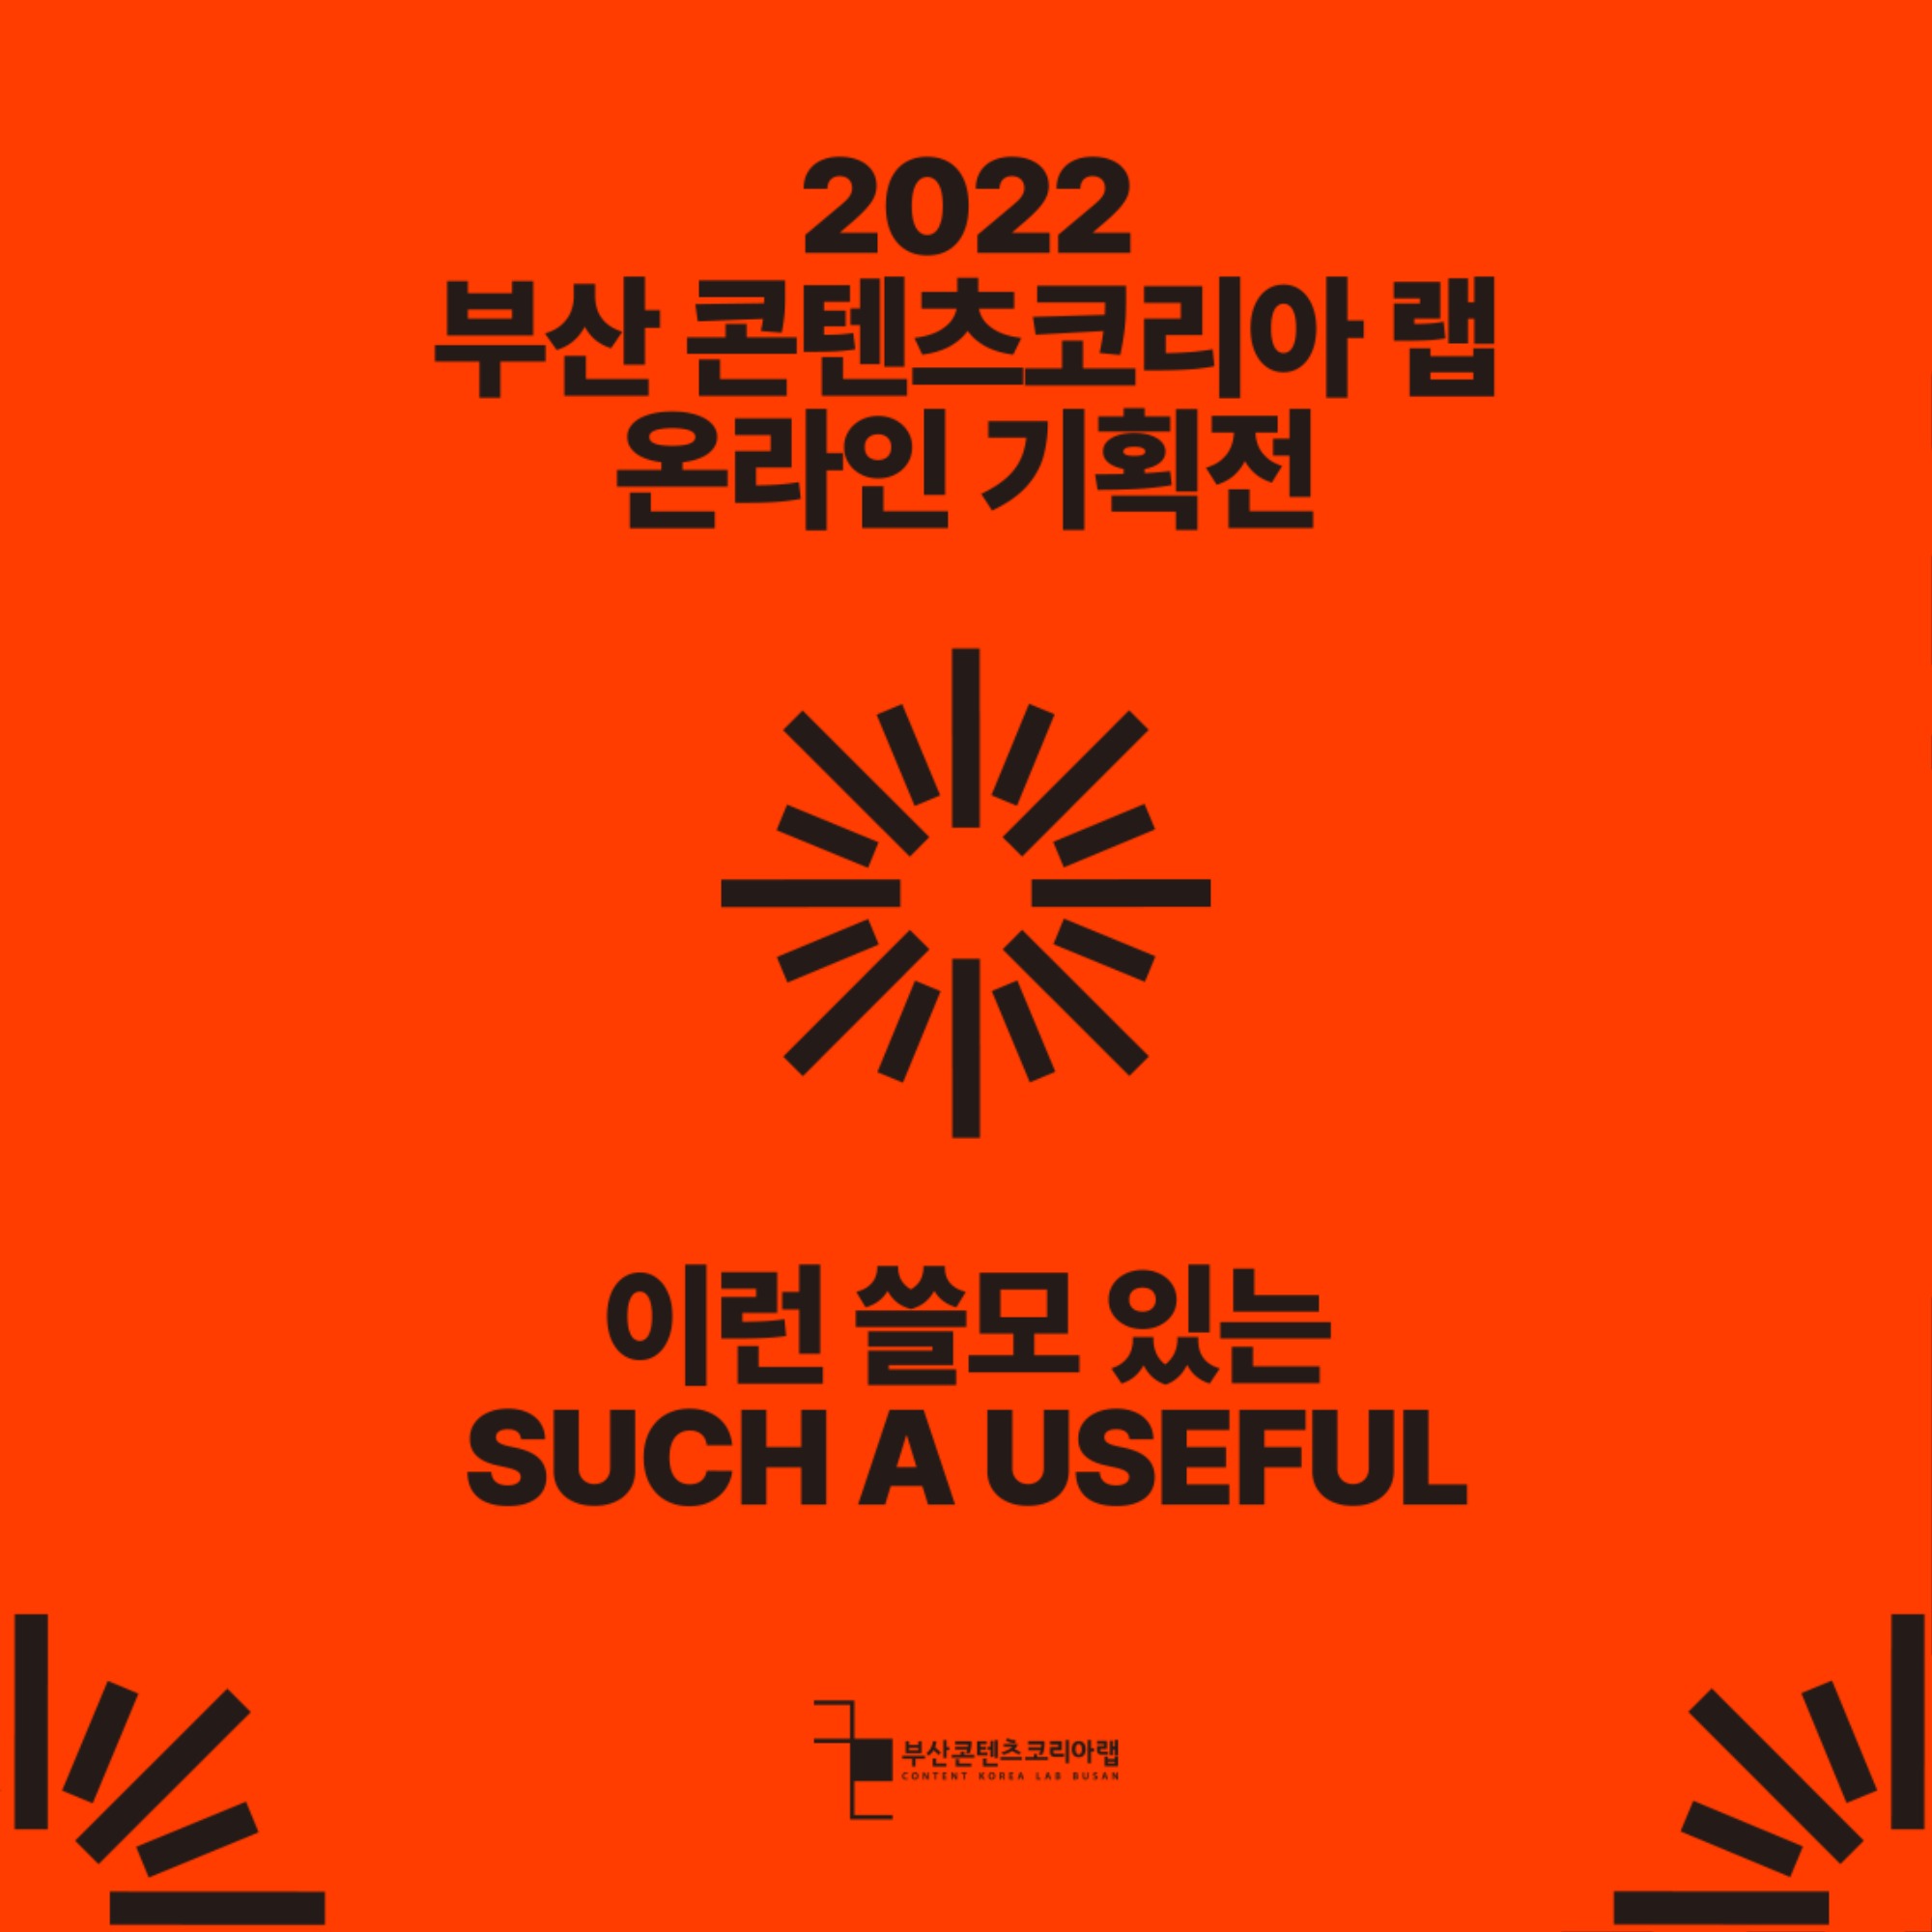 20221202_온라인기획전_인스타용카드뉴스_대지 1 사본.jpg